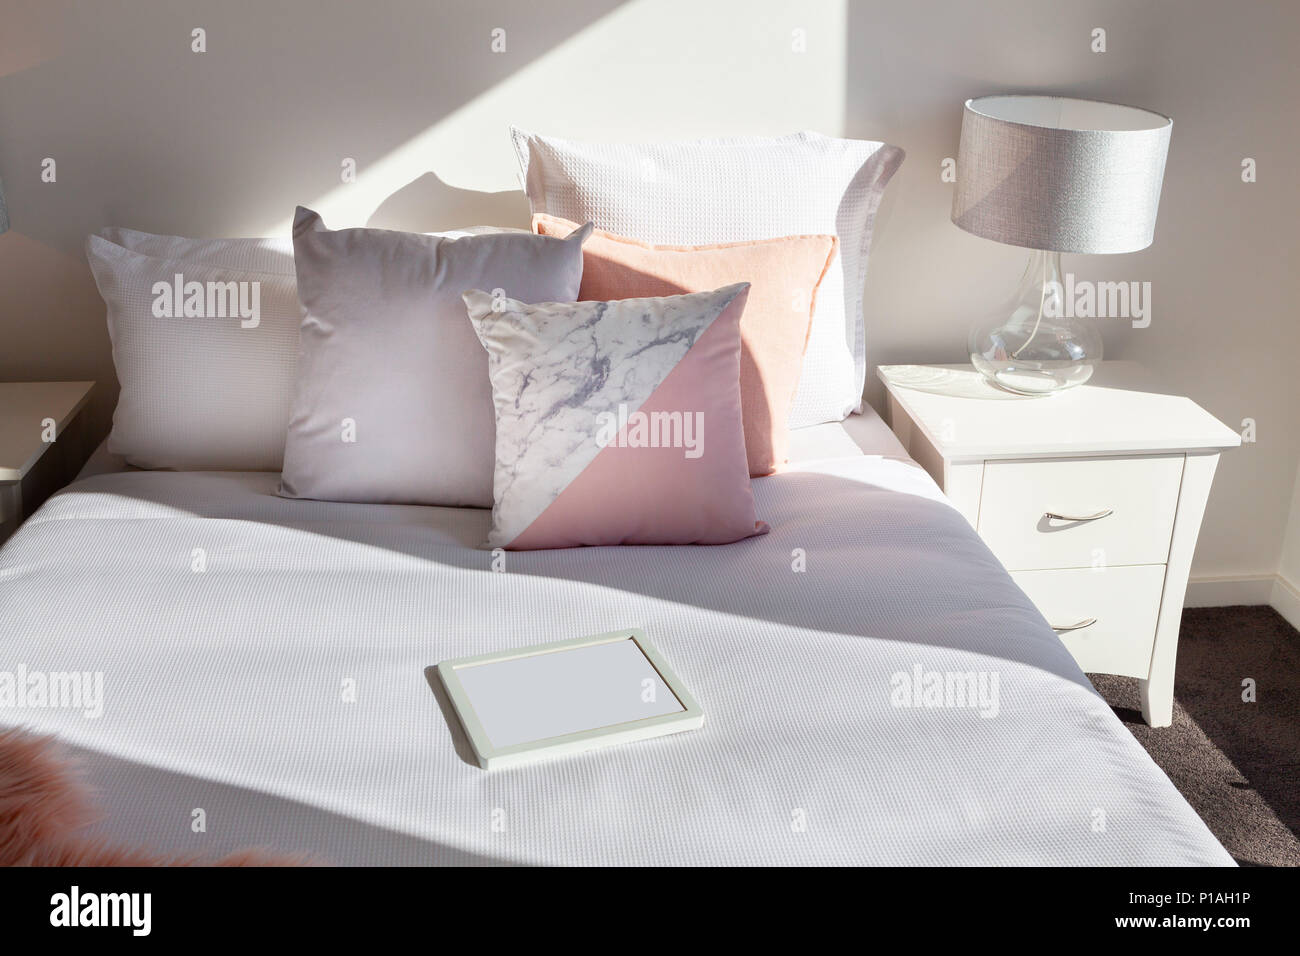 Arrangement élégant d'oreillers sur le lit et le cadre photo vide with copy space Banque D'Images